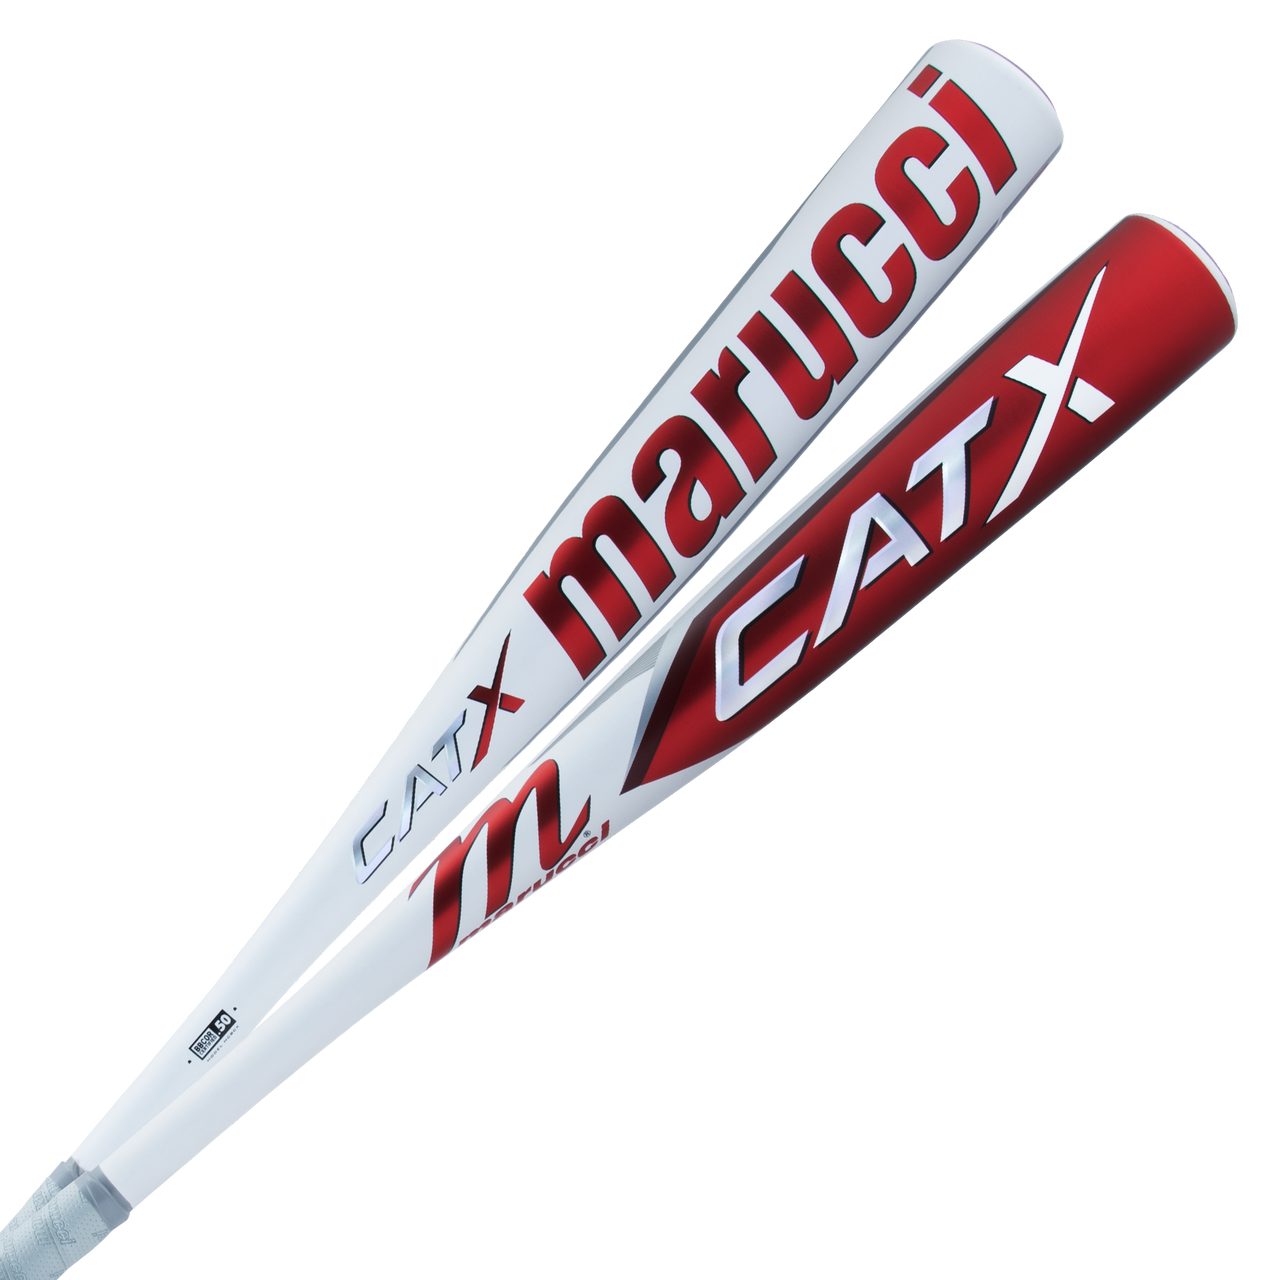 Marucci CATX BBCOR (-3) Baseball Bat (MCBCX)